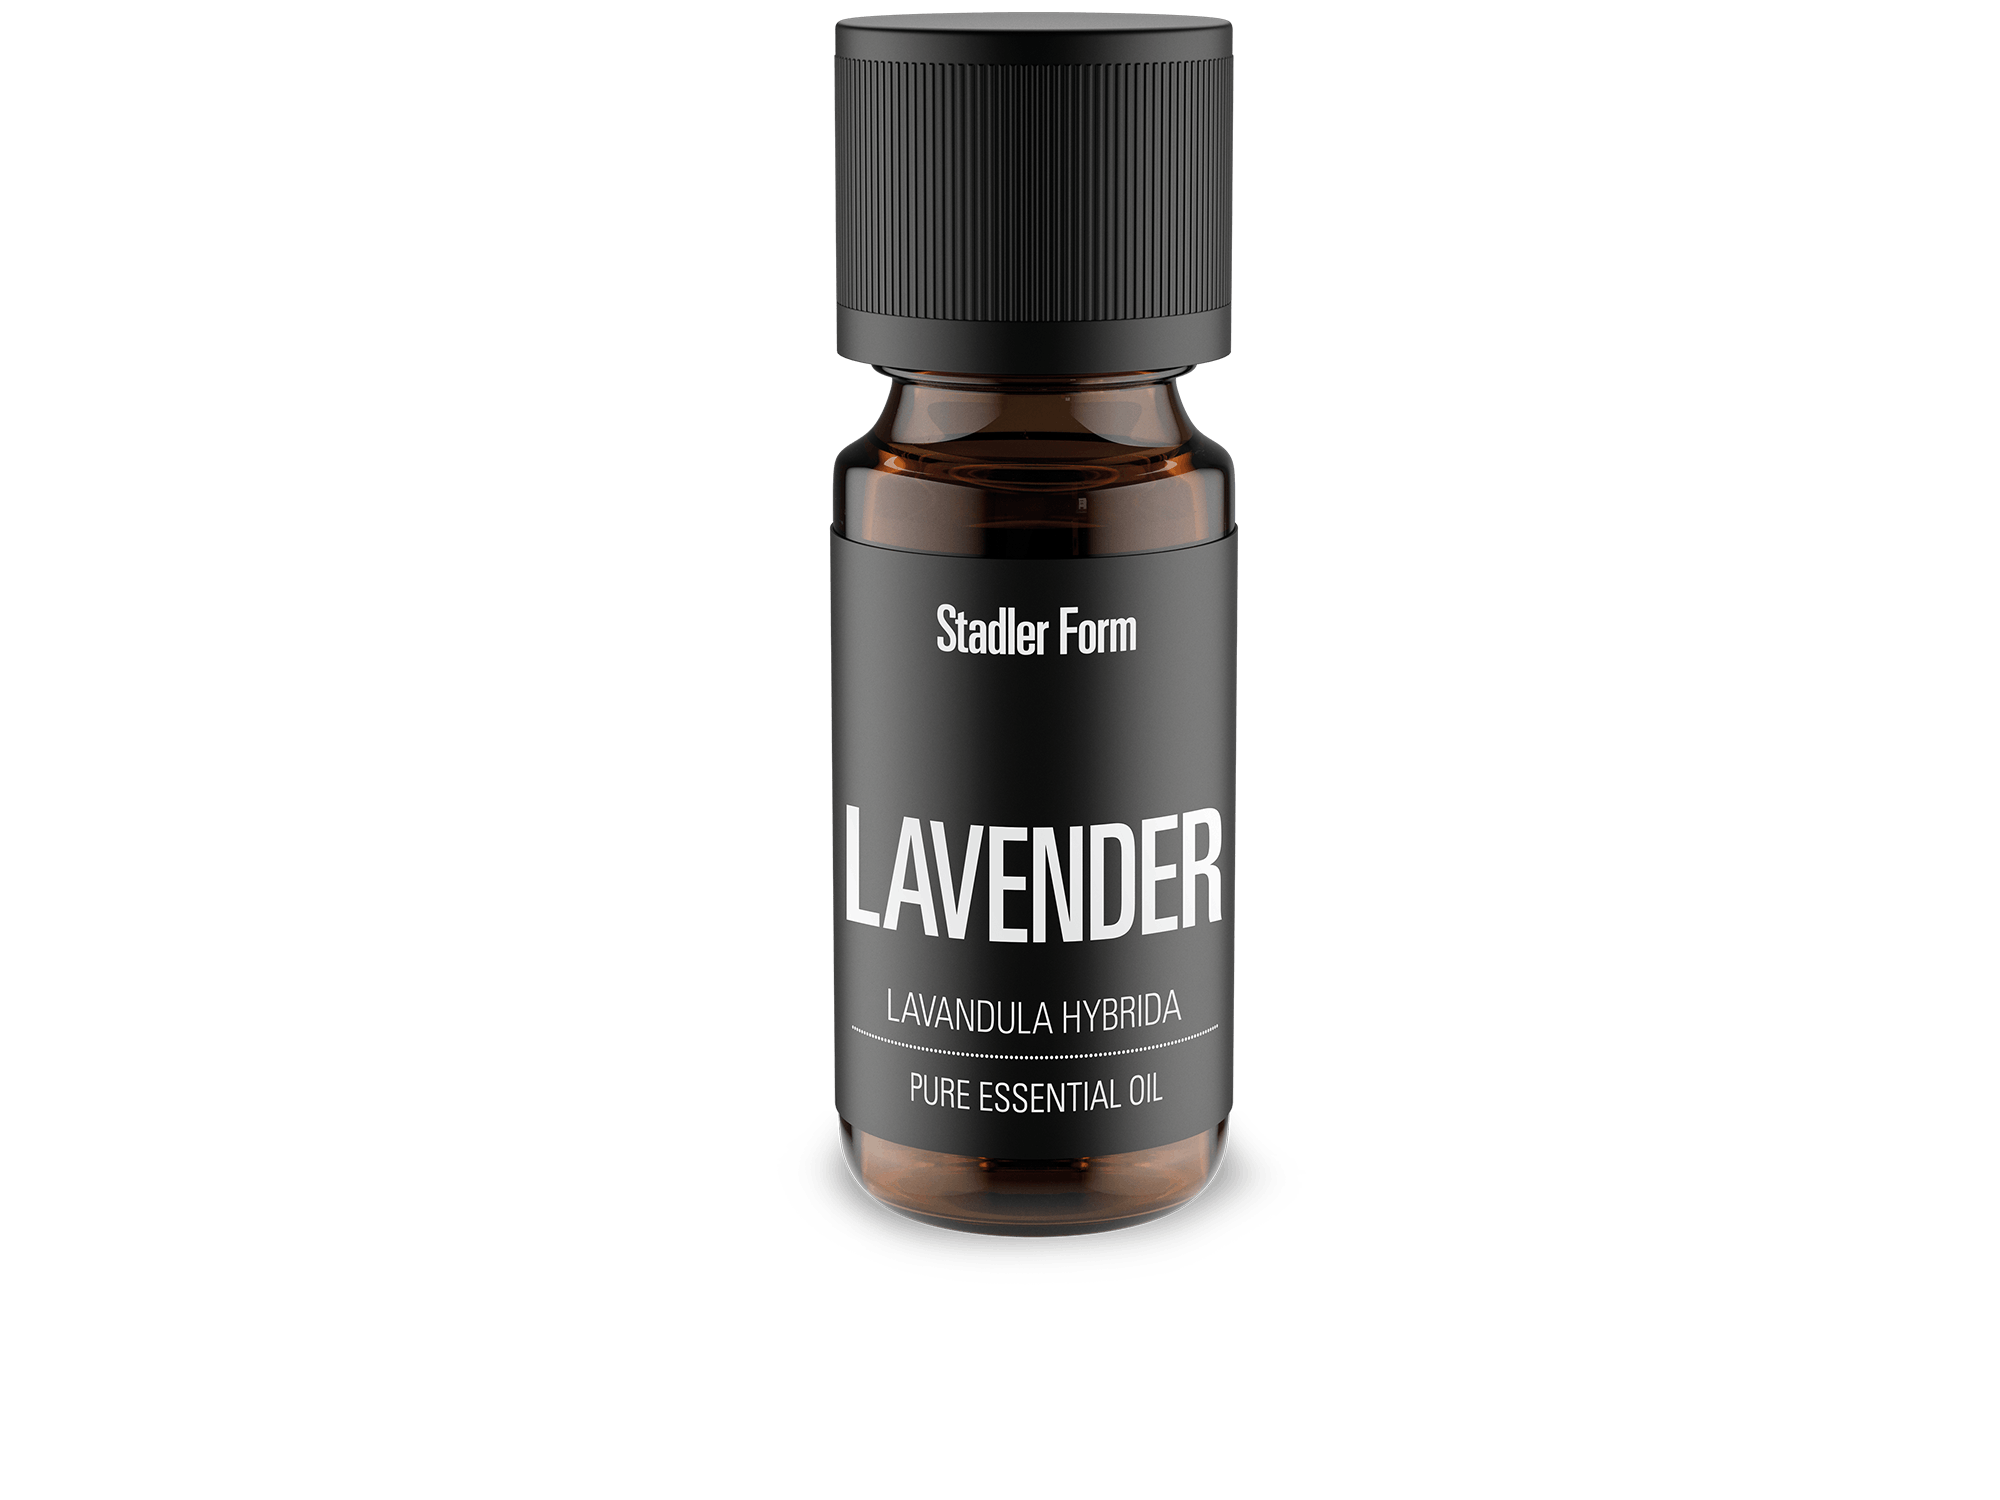 Lavender essential oil by Stadler Form